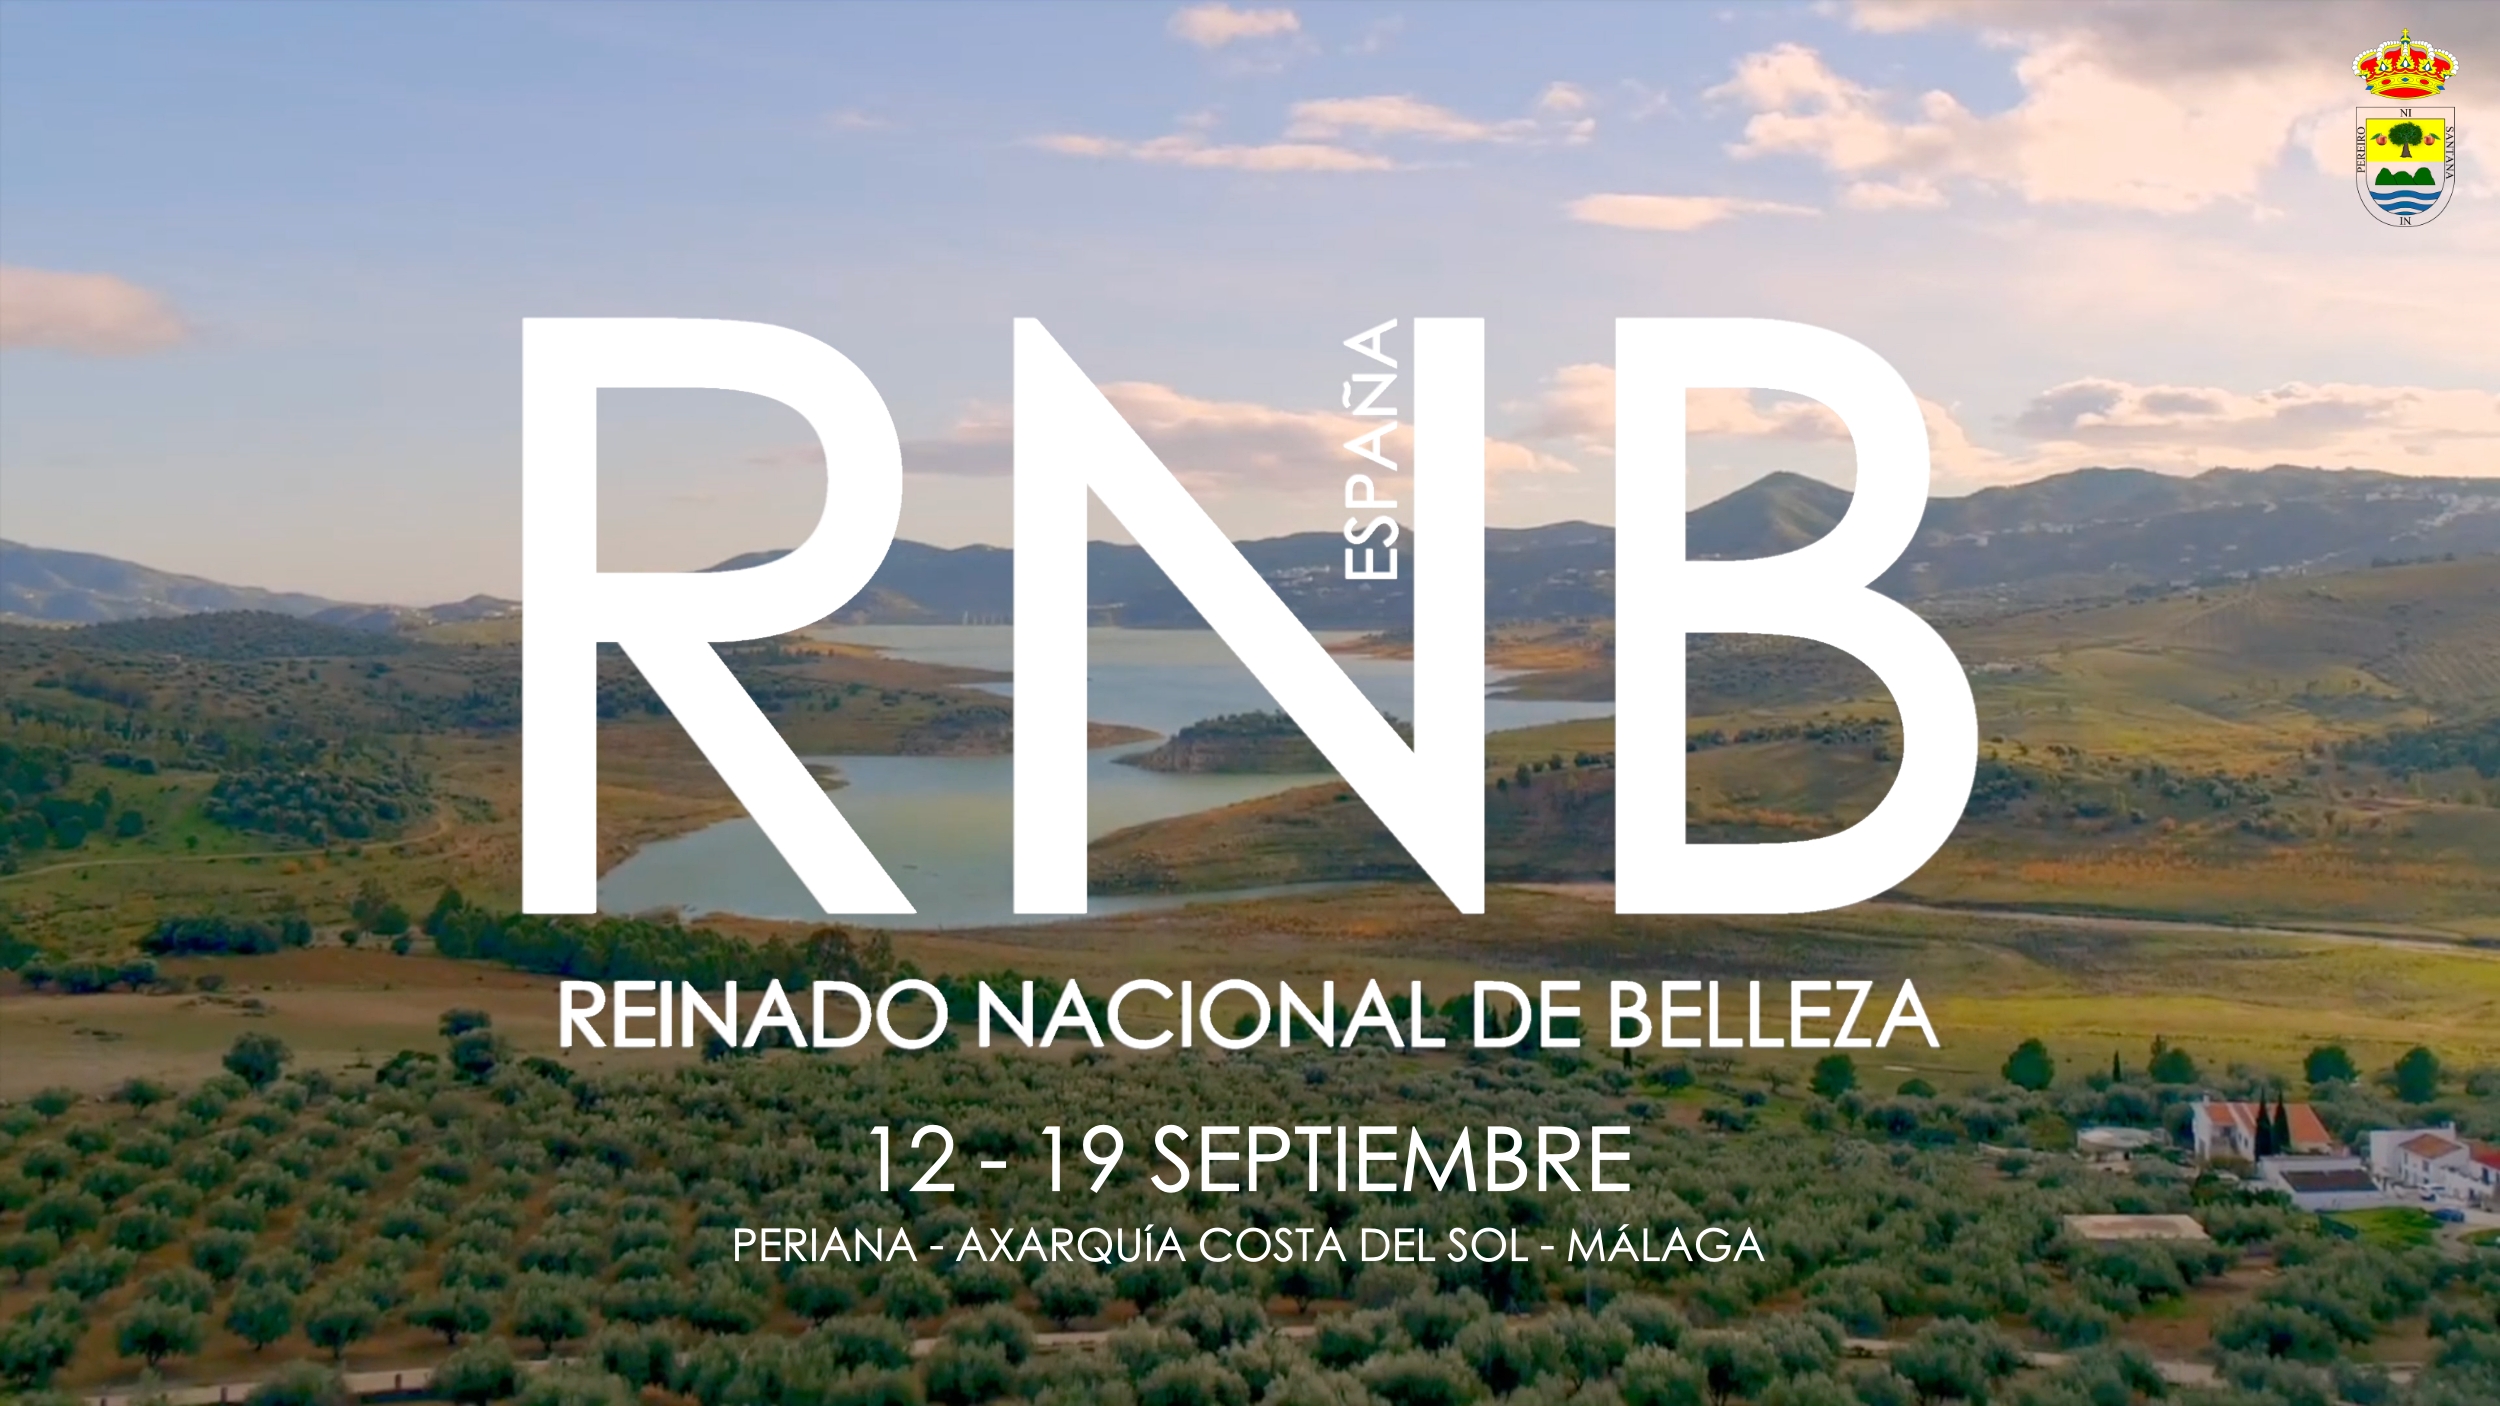 Sede de RNB Espana 2021, Periana Axarquia Costa del Sol Malaga, del 12 al 19 de septiembre